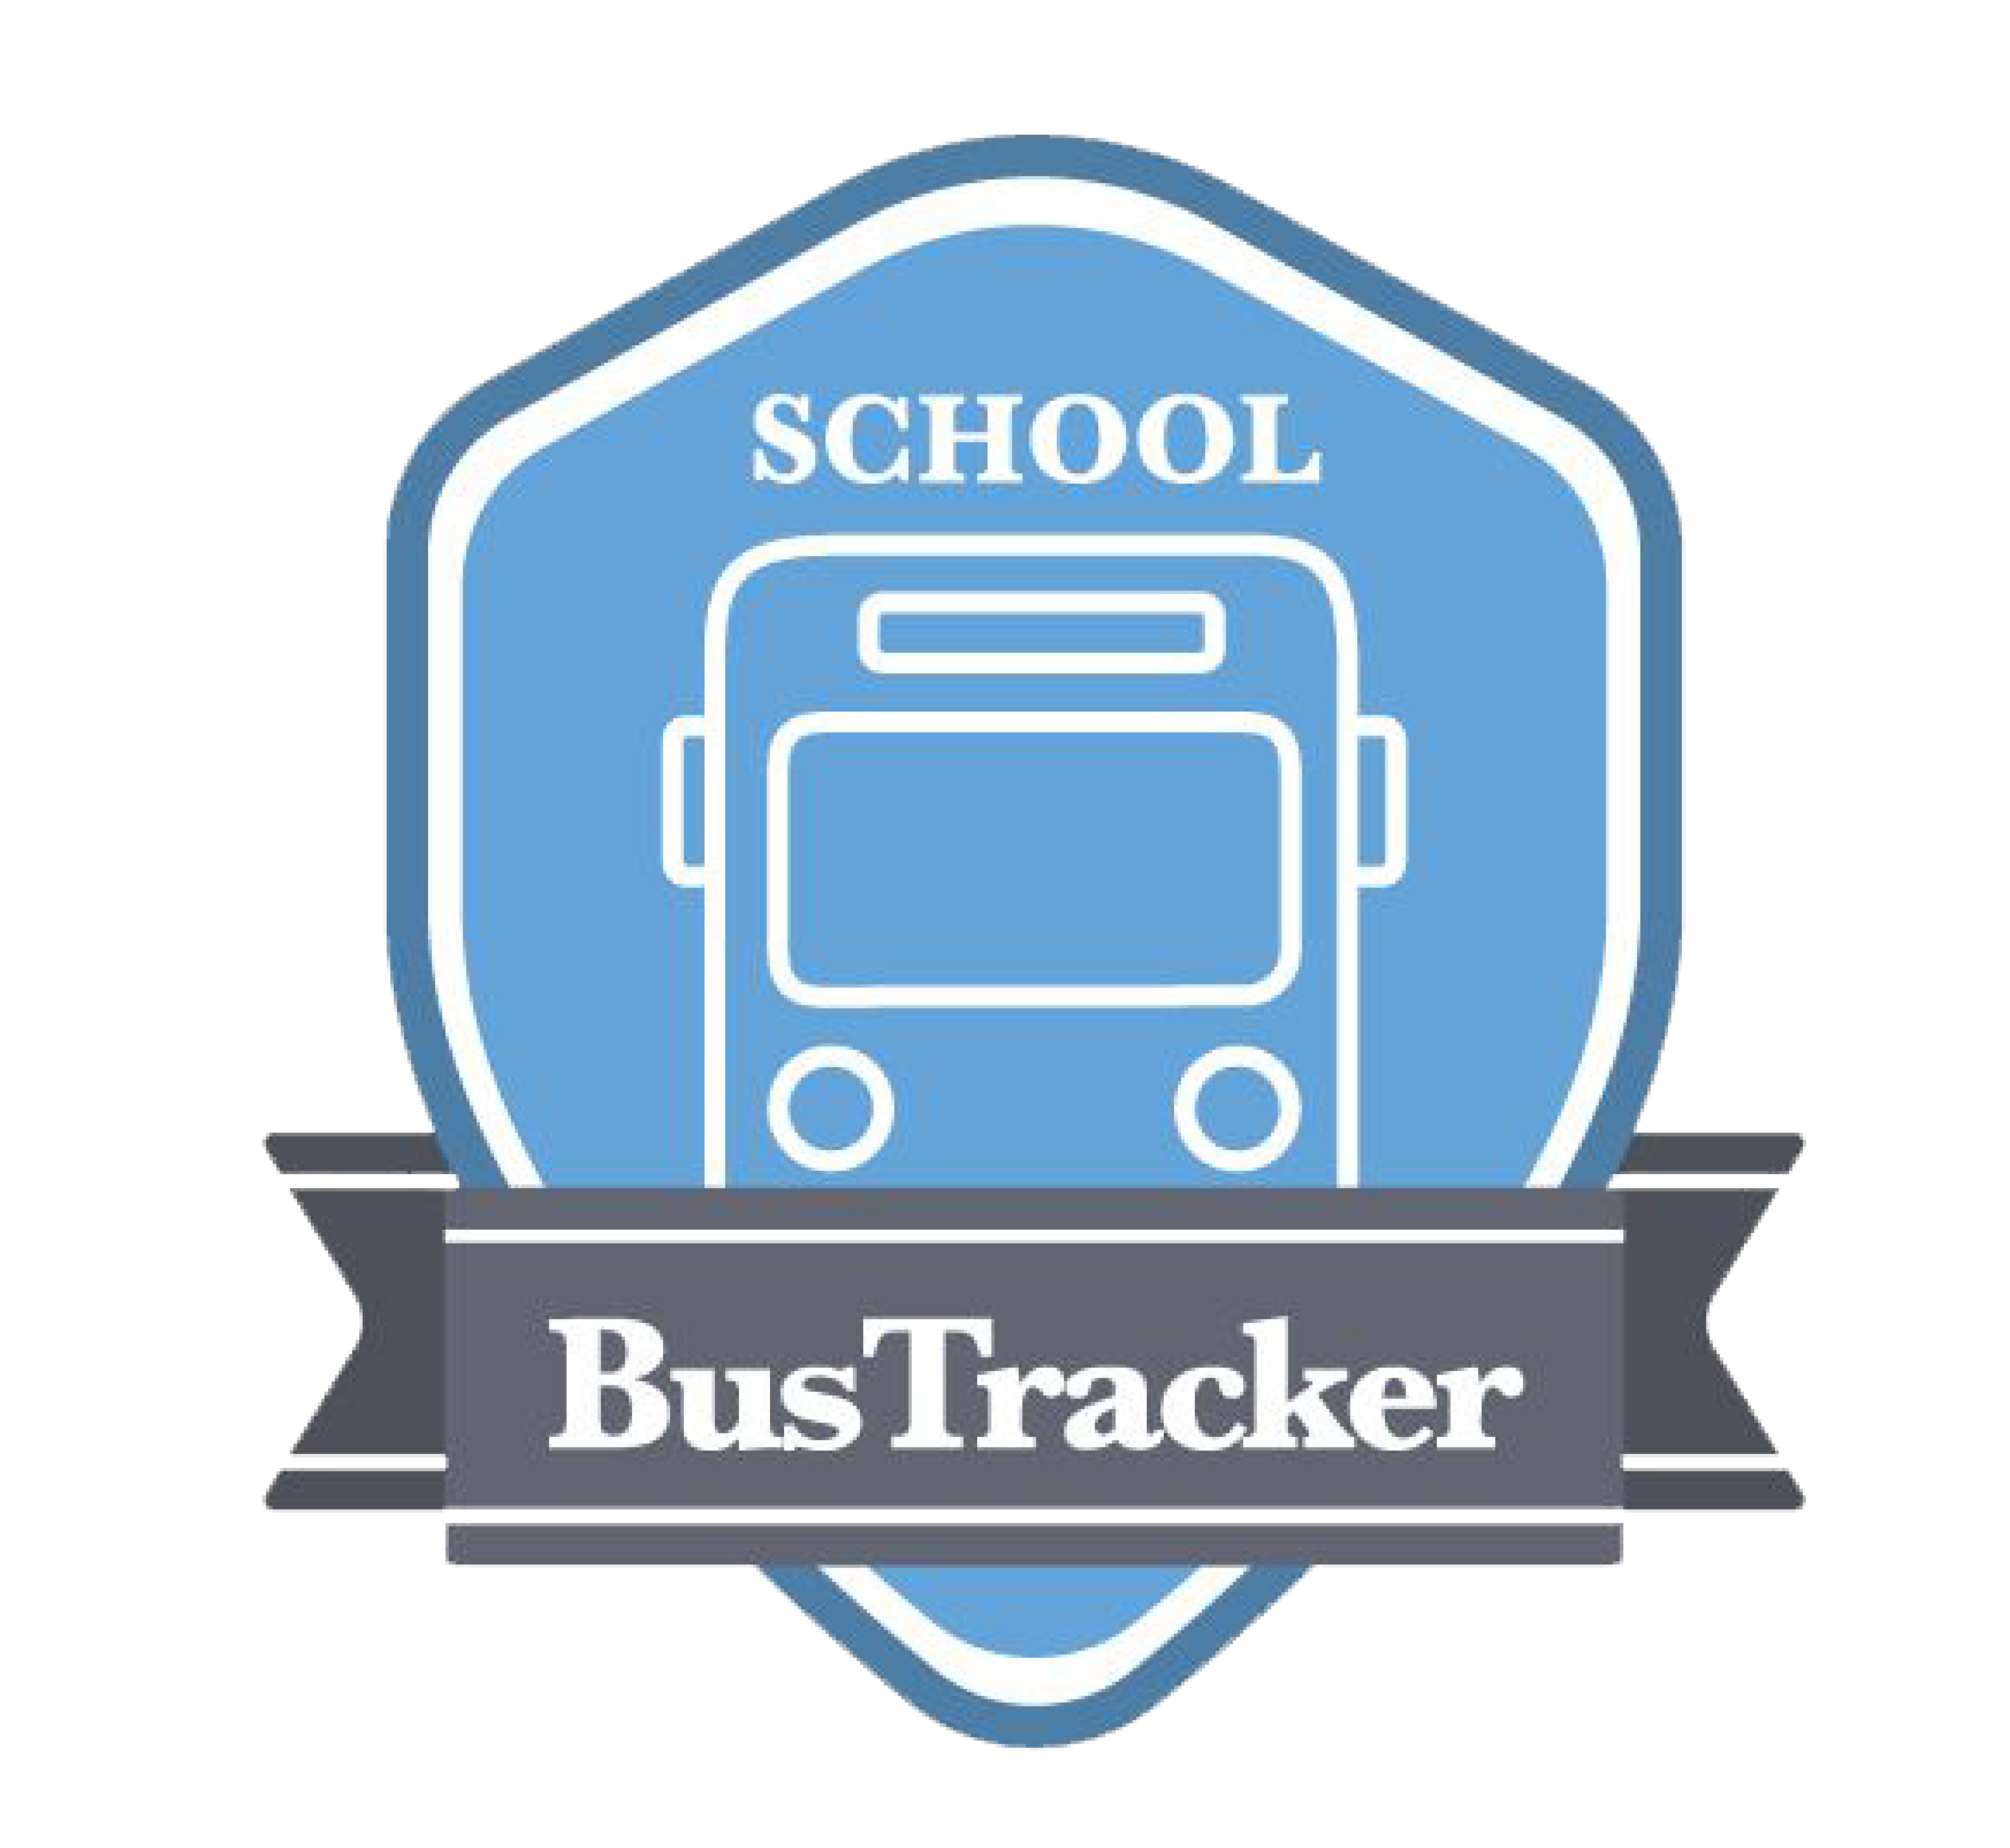 schoolbustracker logo